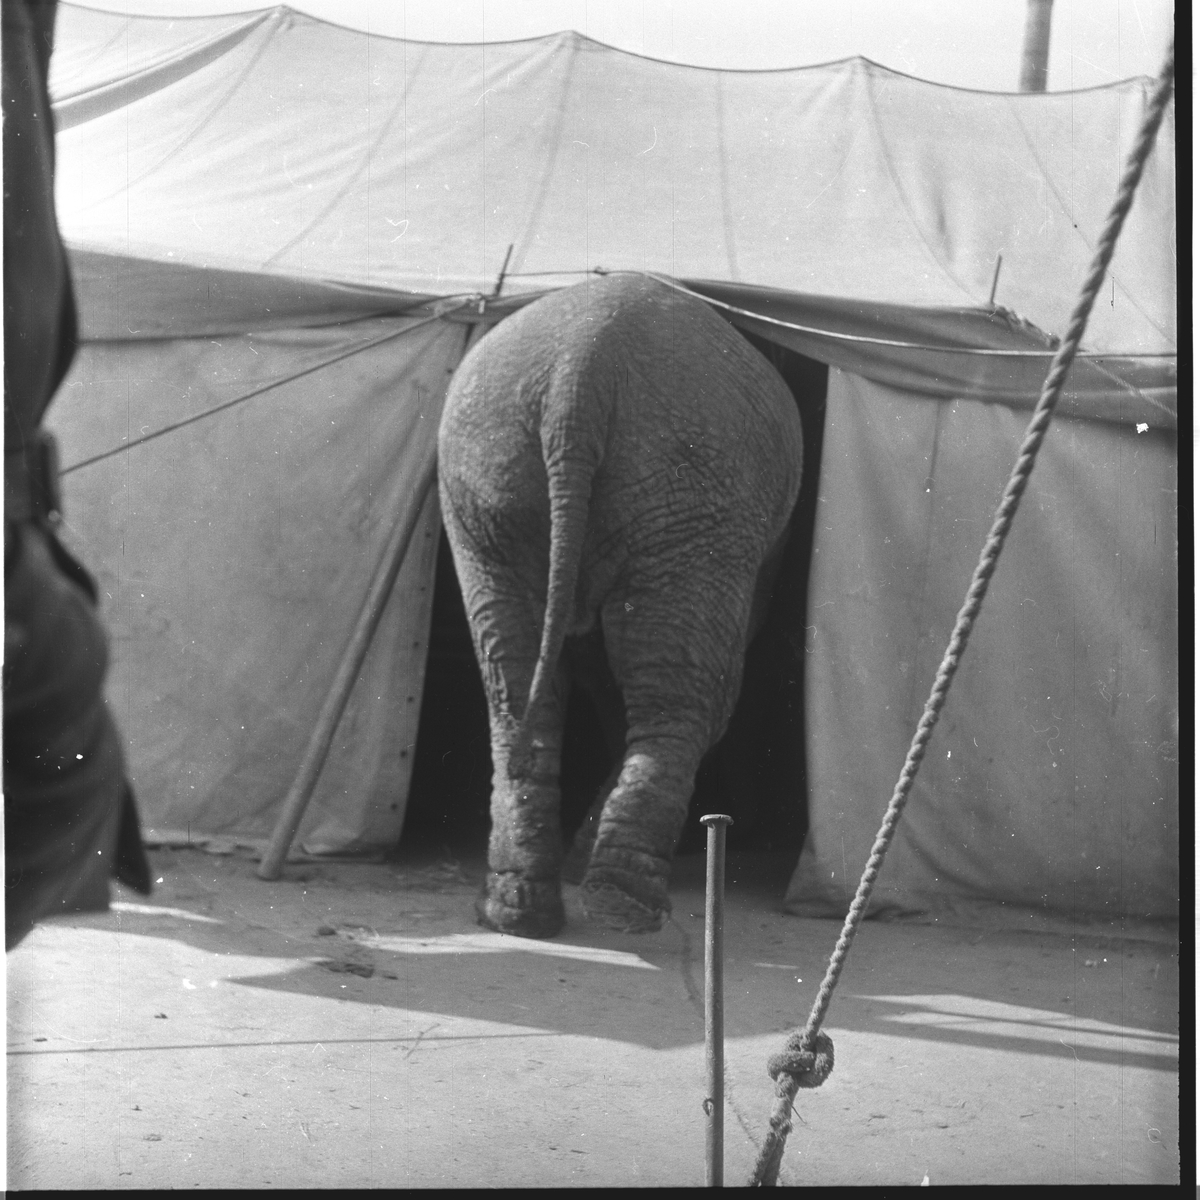 Cirkus Berny, elefanten Randop.
Fotografert 1954.